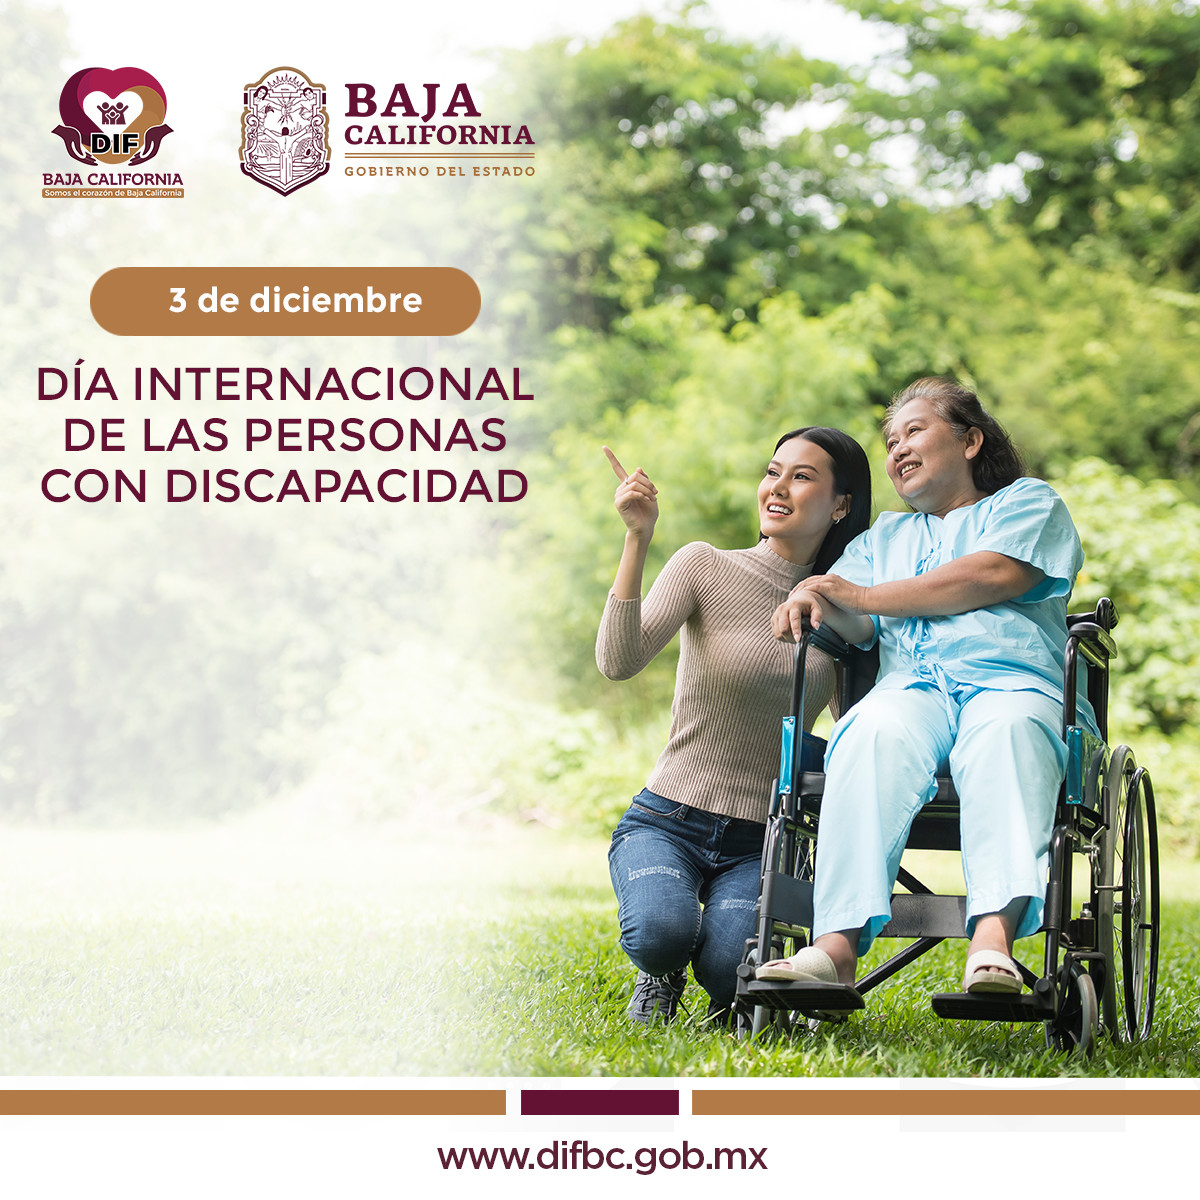 En DIF BC, todos los días trabajamos con el corazón por delante para promover los derechos y el bienestar de las personas con discapacidades en todos los ámbitos de la sociedad y el desarrollo.